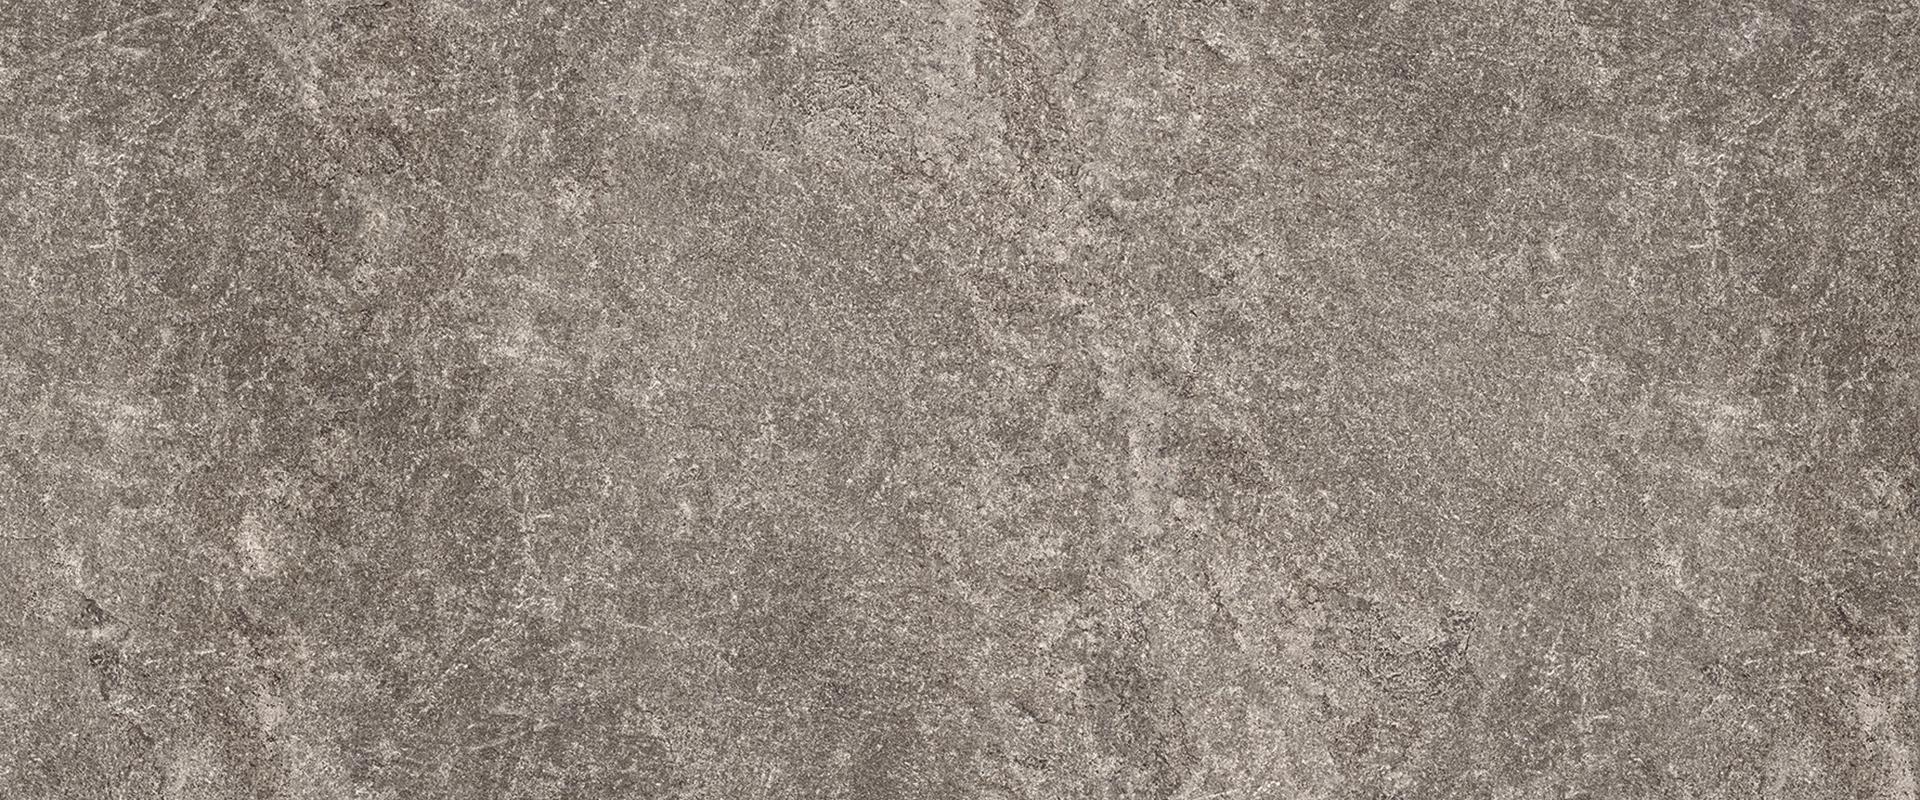 Oros Stone: Fondo Anthracite Field Tile (24"x48"x9.5-mm | tecnica)